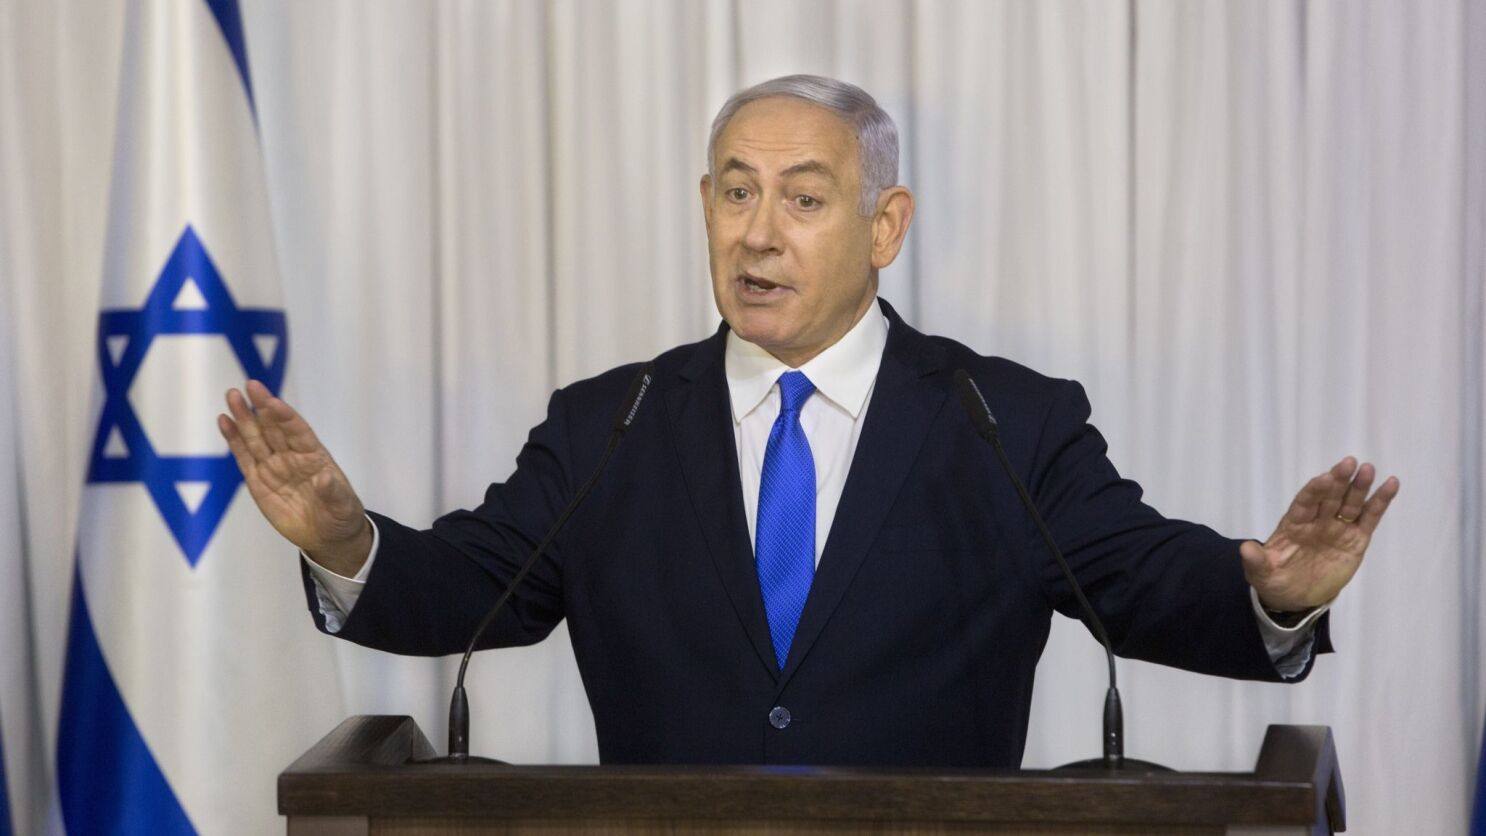 Benjamin minister israel netanyahu prime